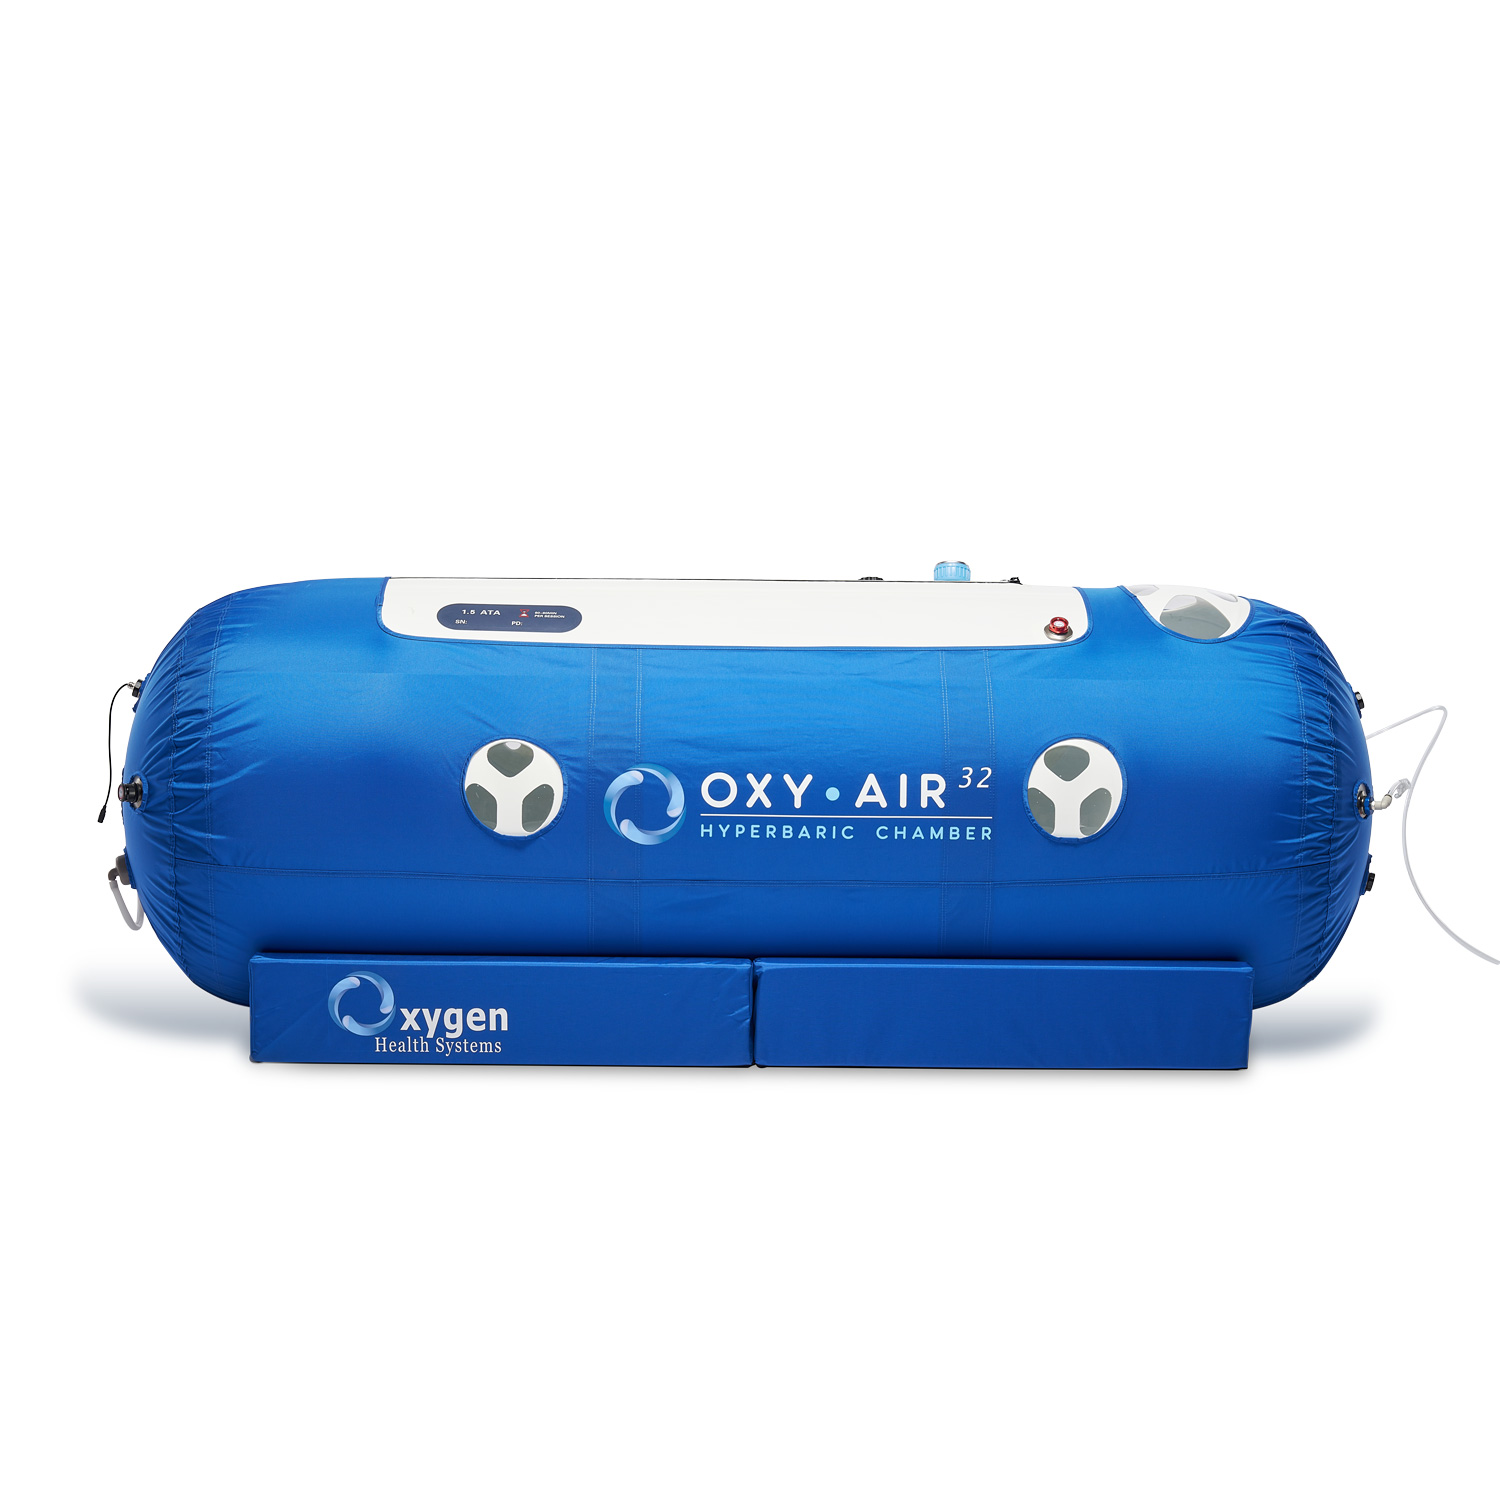 32" OxyAir Hyperbaric Oxygen Chamber